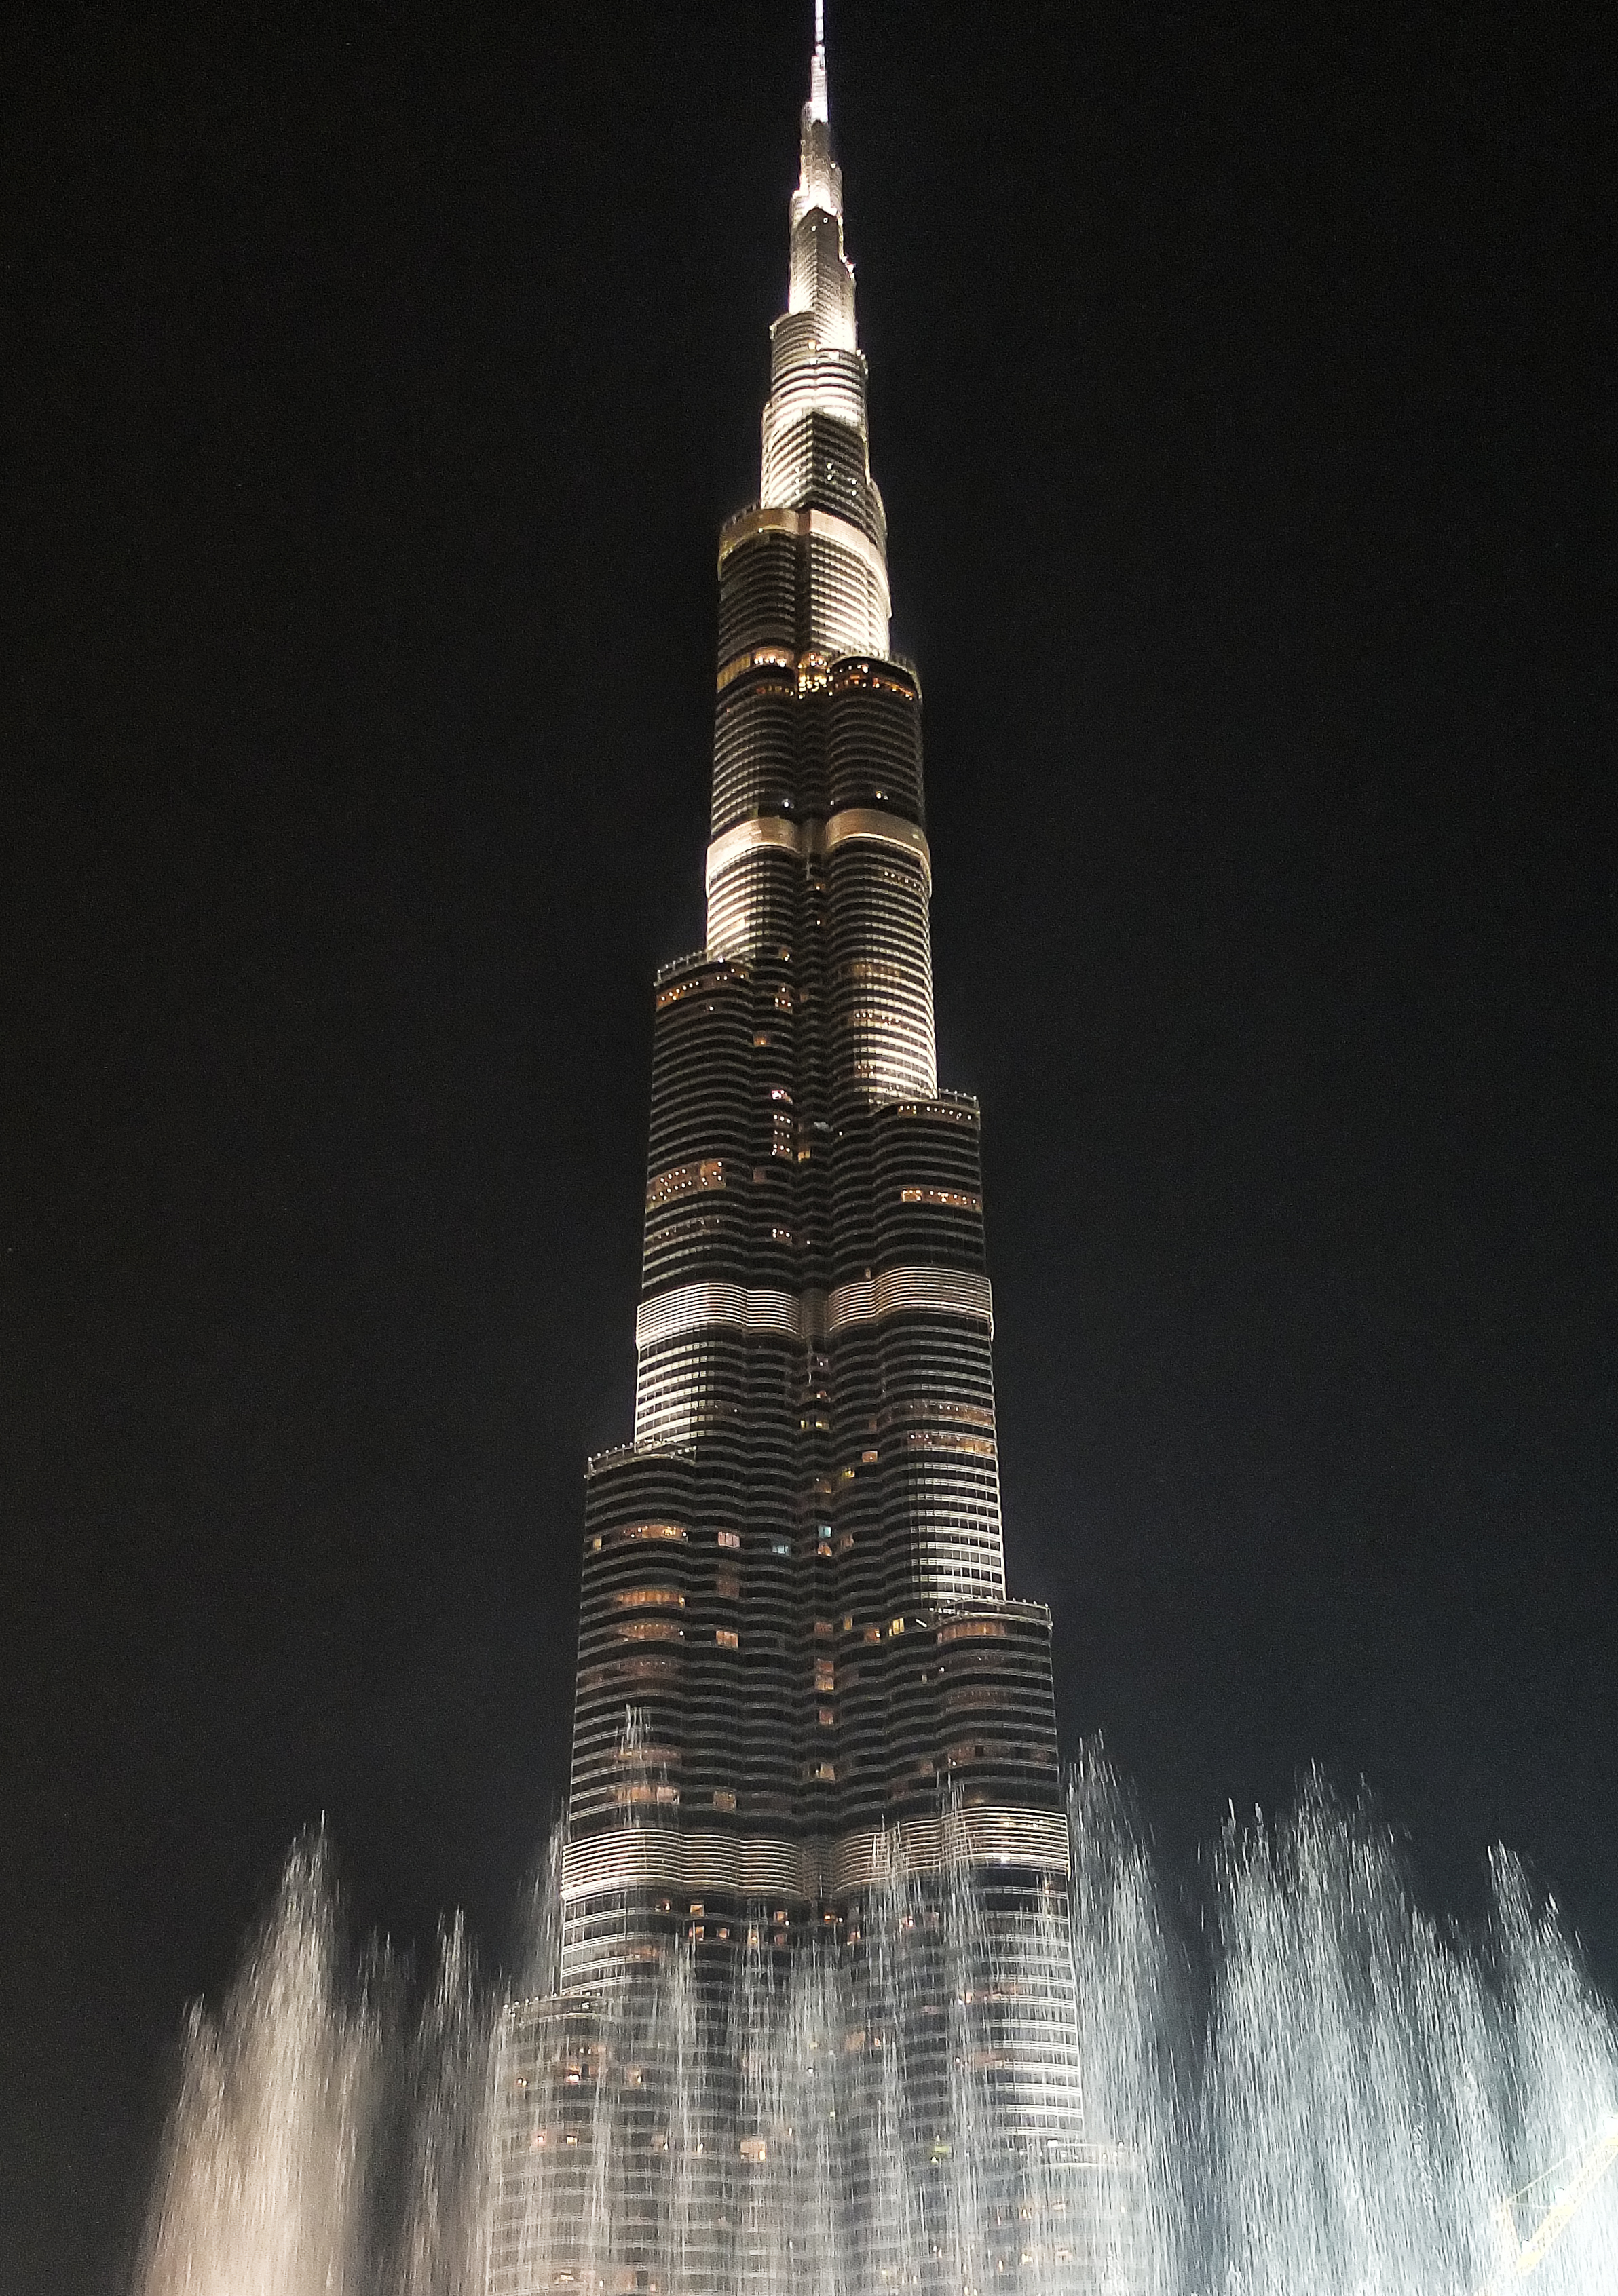 Описание халифа. Башня Бурдж Халифа в Дубае. Бурдж Халифа 2011. Бурдж-Халифа (828 м). Дубай, ОАЭ. Достопримечательности Дубая Бурдж Халифа.